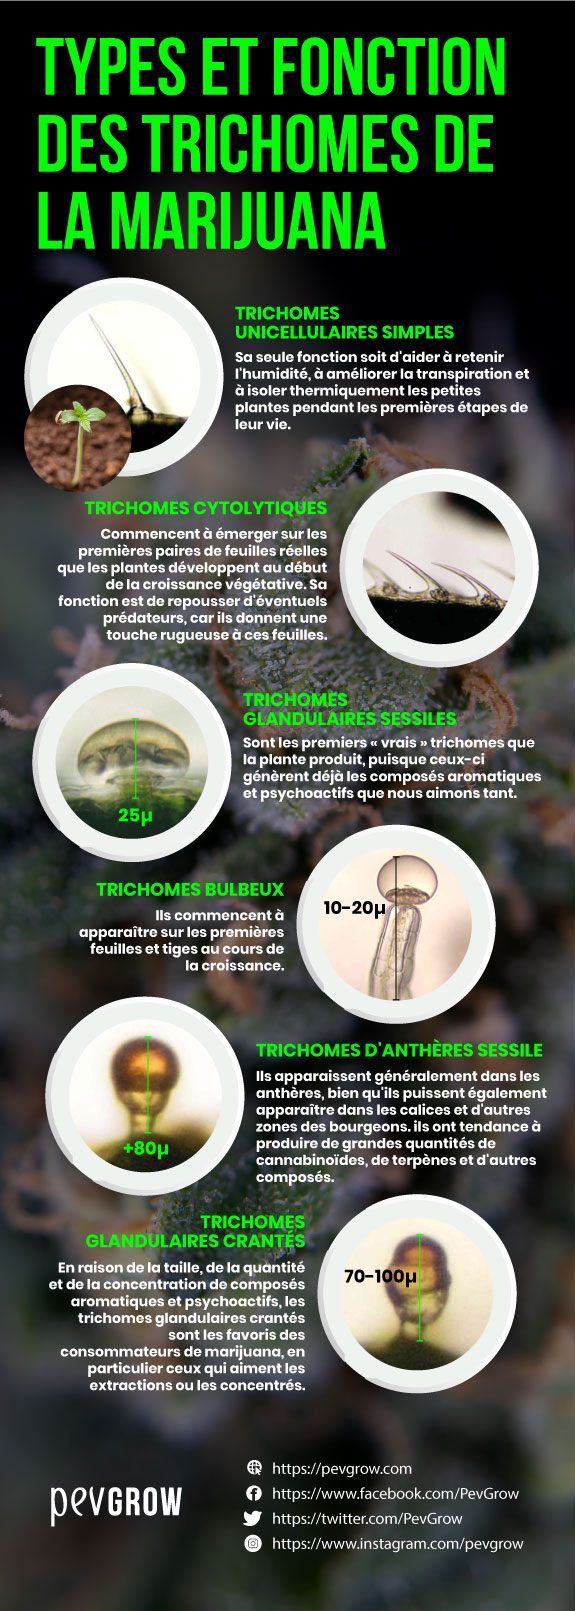 Résumé des types et fonctions des trichomes du cannabis